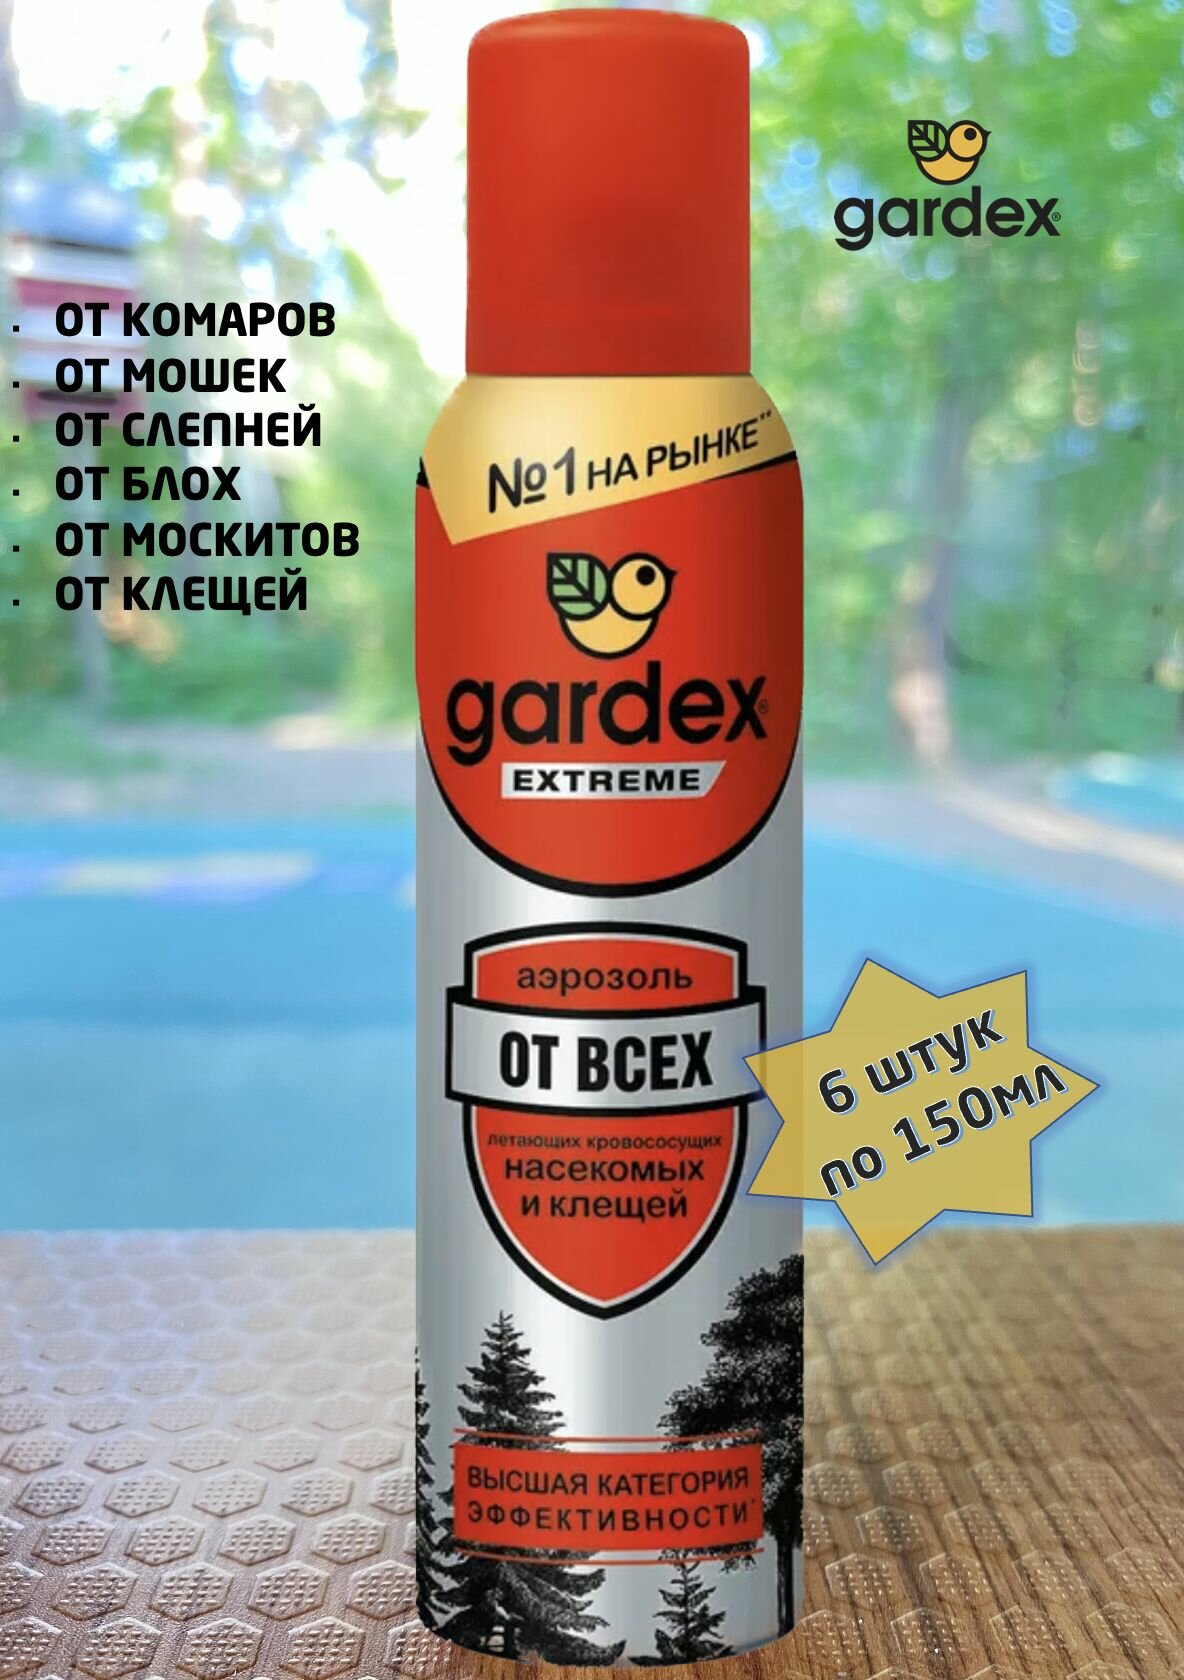 Спрей от комаров, от клещей, от мошки Gardex Extreme, аэрозоль, 6 шт по 150 мл